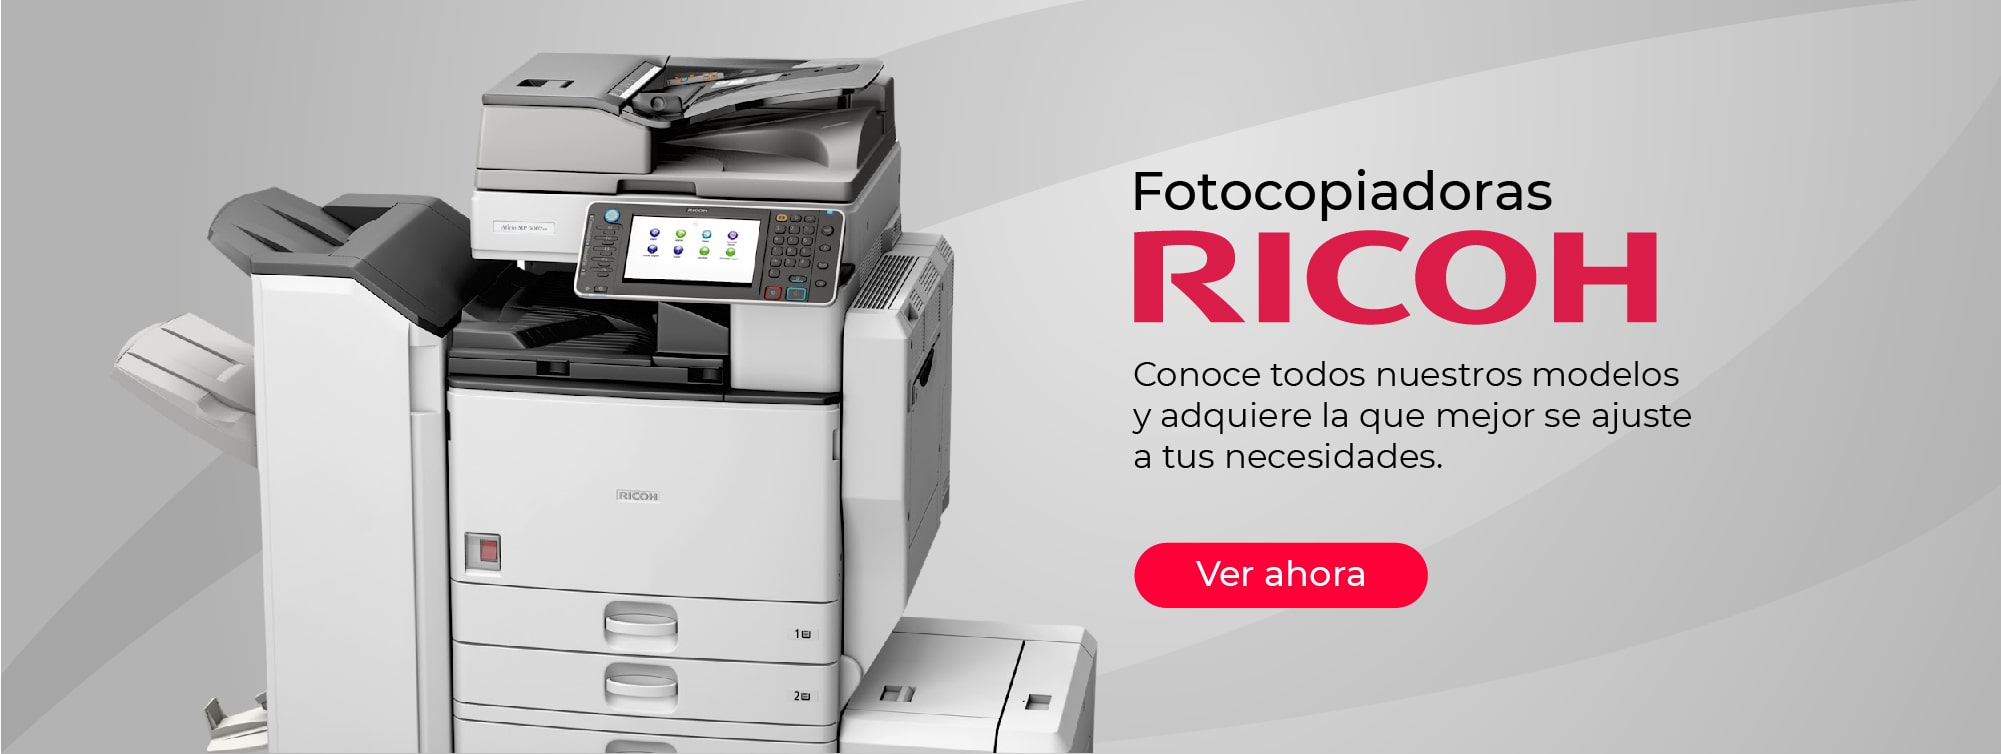 Impresoras y Fotocopiadoras, Servicio Técnico, Suministros y Equipos